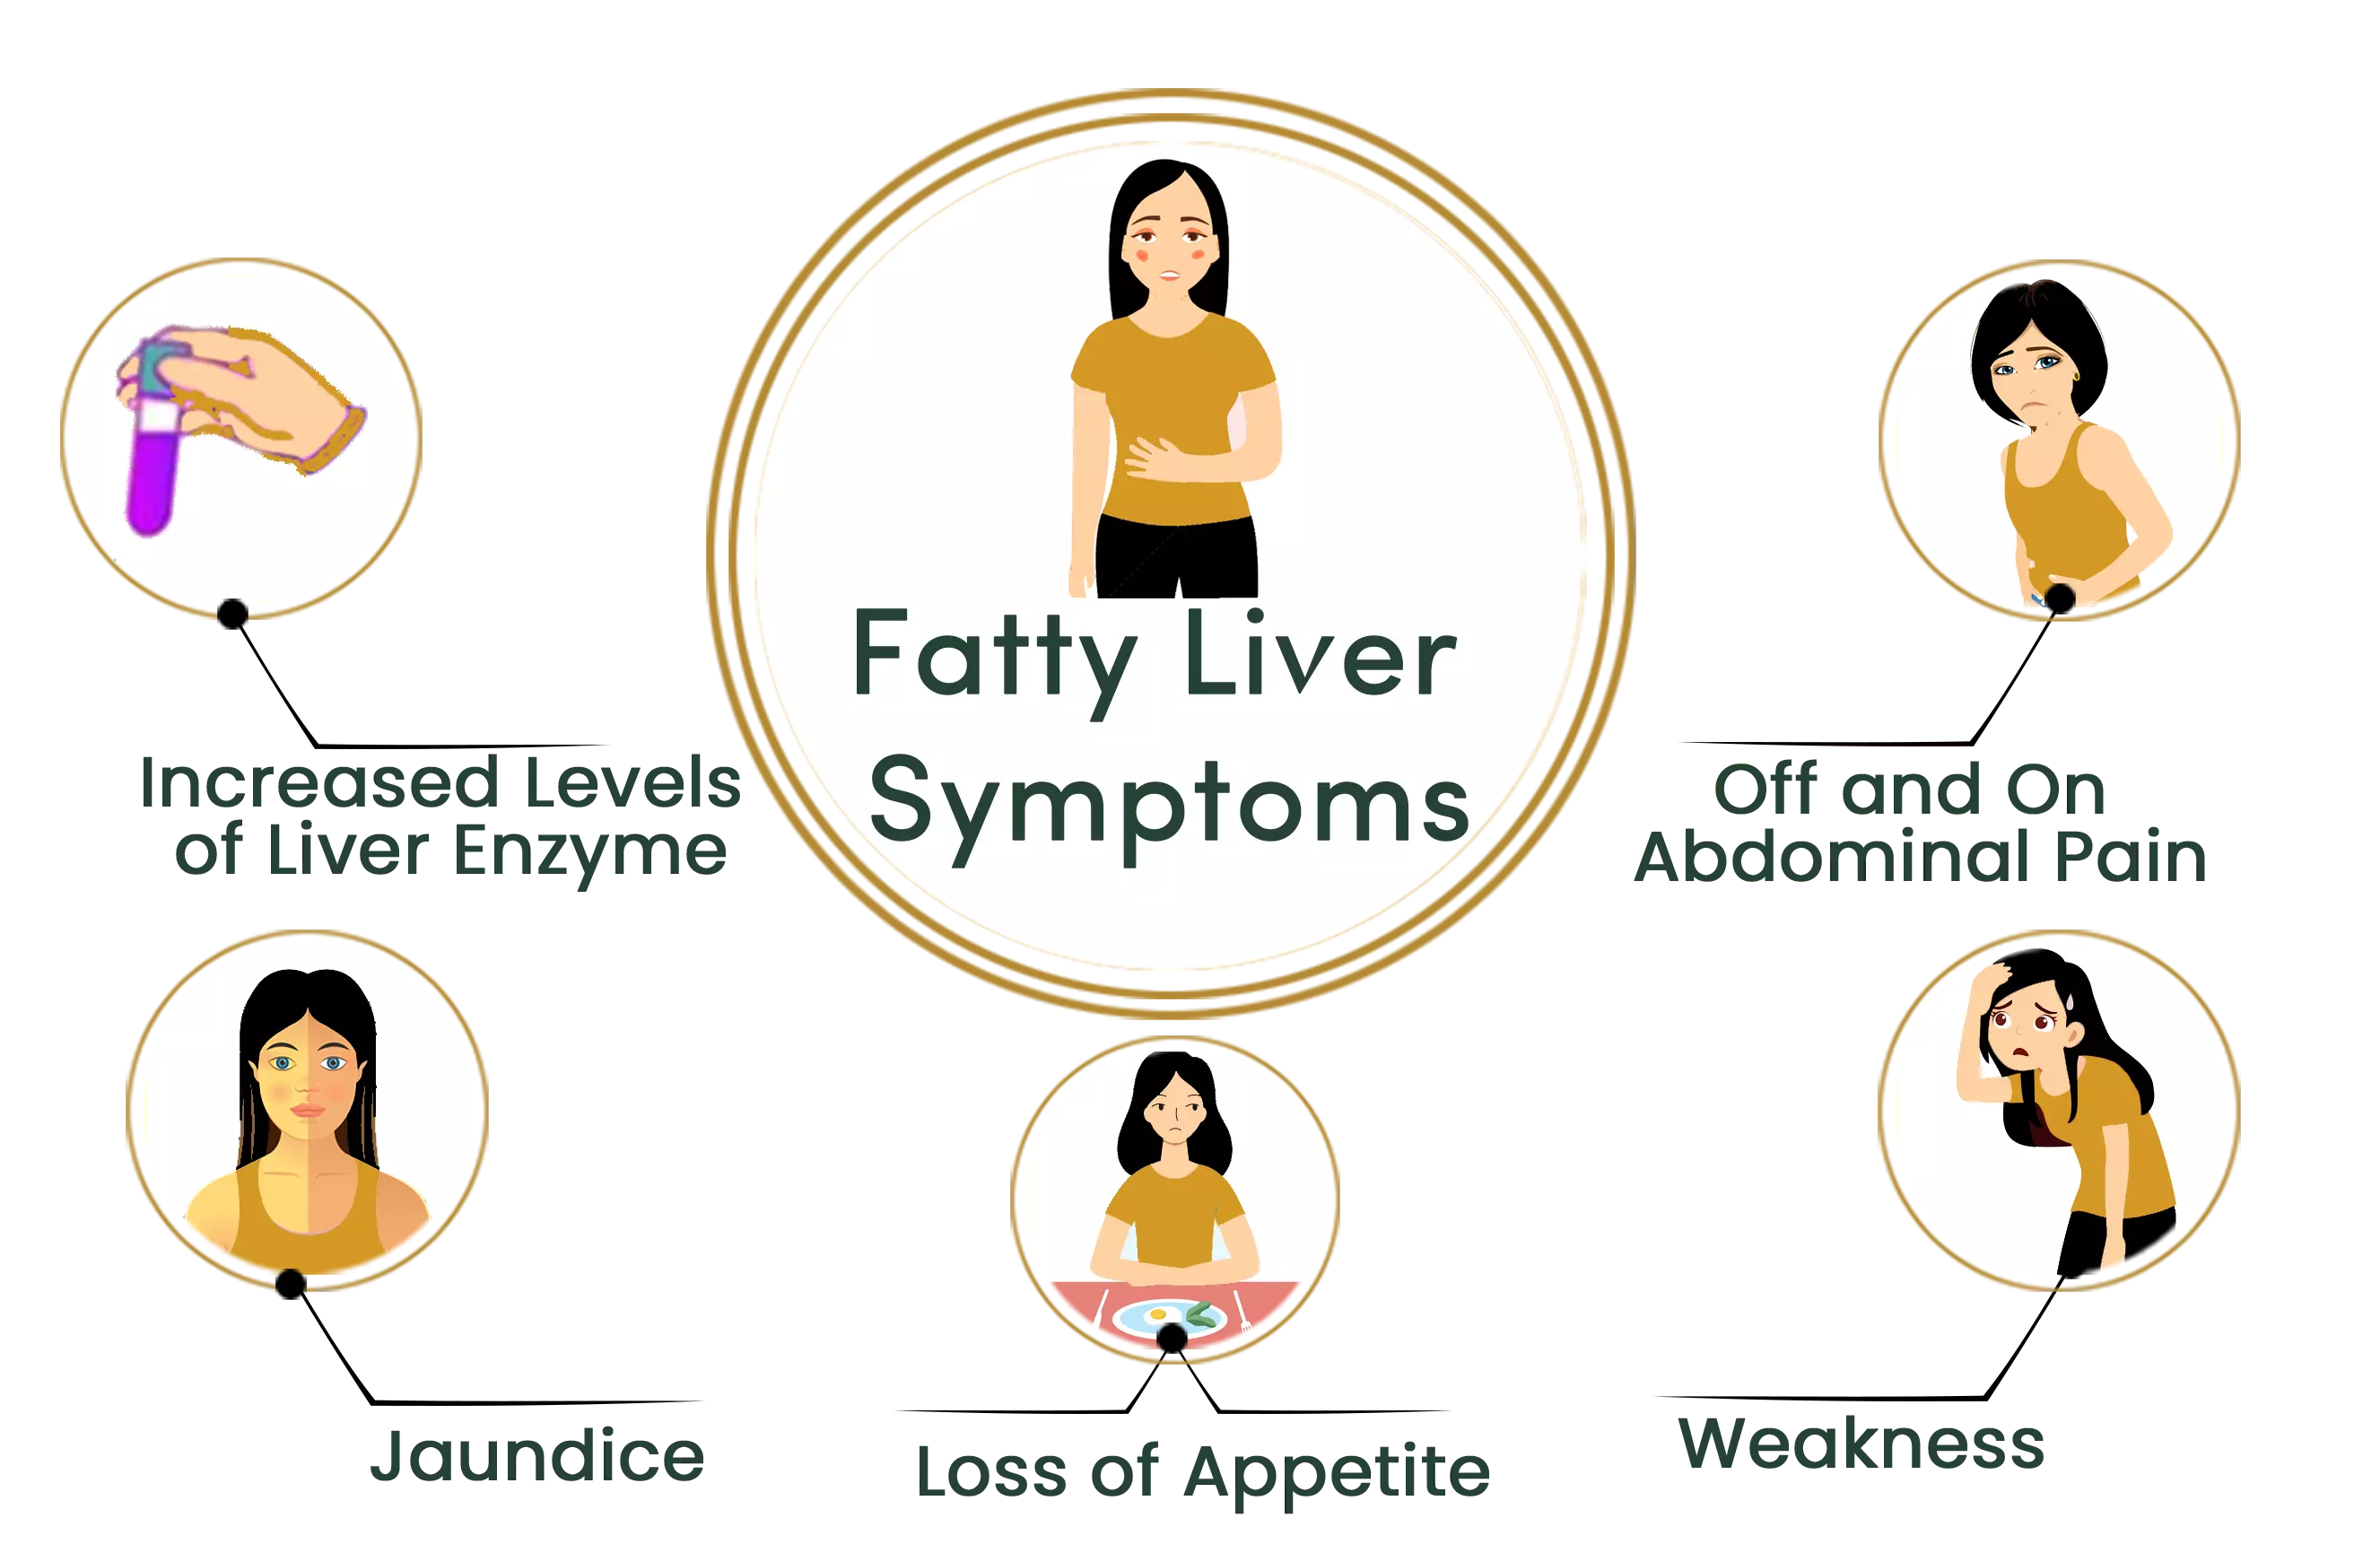 Fatty Liver symptoms